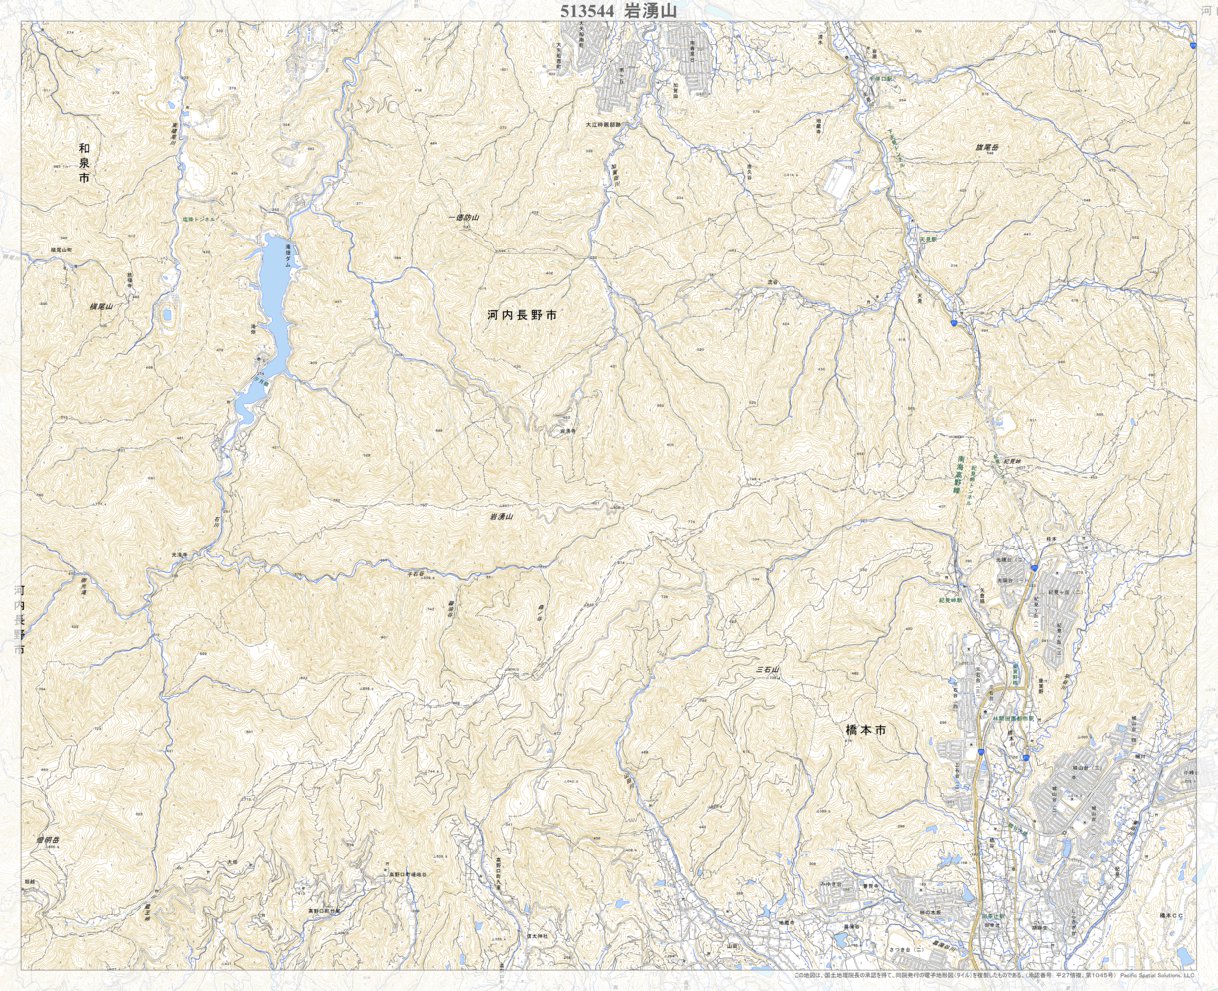 513544 岩湧山（いわわきざん Iwawakizan）, 地形図 Map by Pacific 